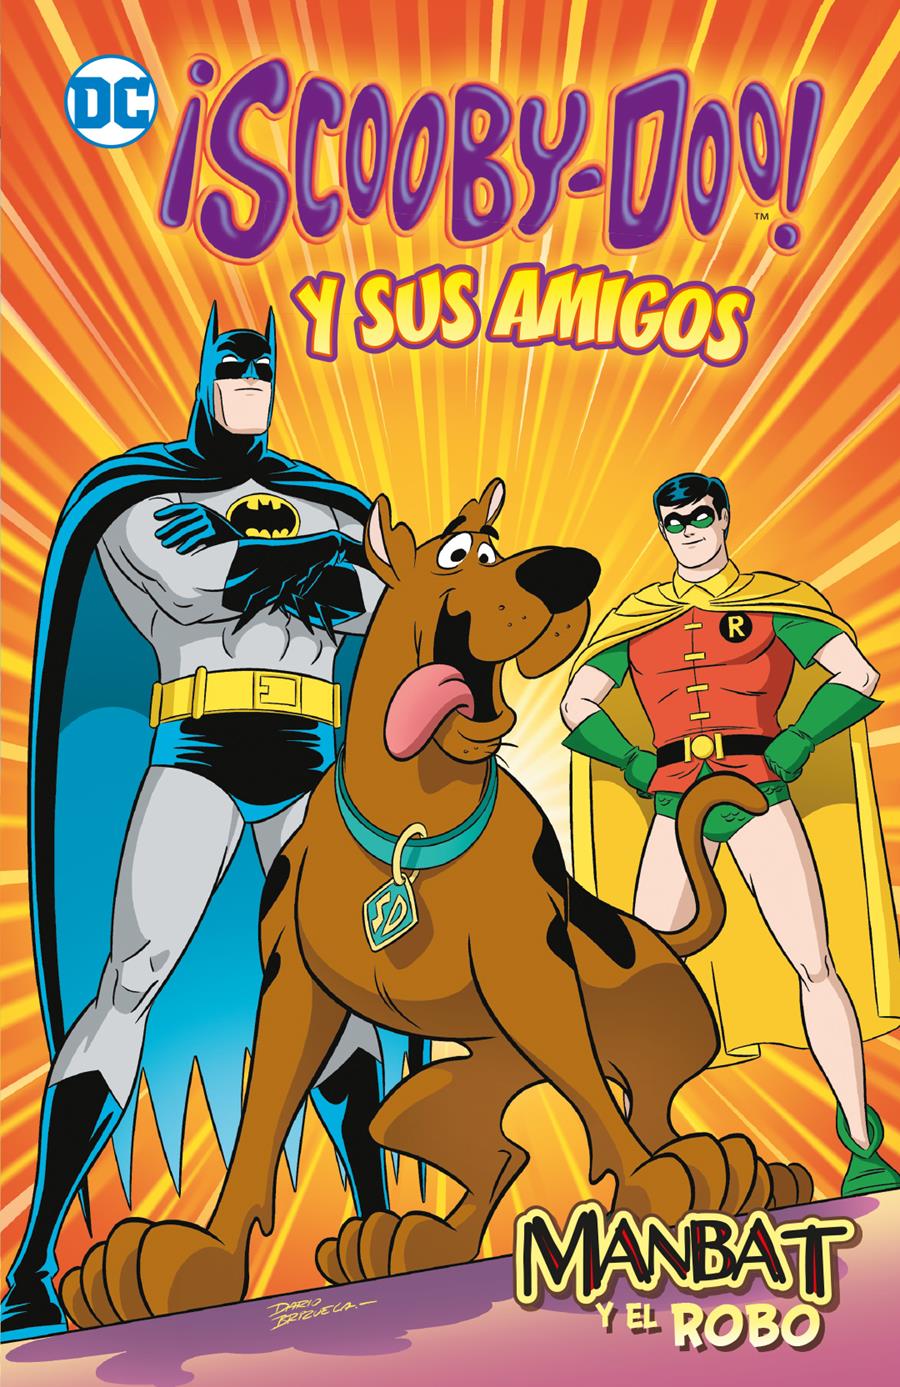 ¡Scooby-Doo! y sus amigos vol. 1 (Biblioteca Super Kodomo): Manbat y el robo | N1122-ECC47 | Darío Brizuela / Sholly Fisch | Terra de Còmic - Tu tienda de cómics online especializada en cómics, manga y merchandising